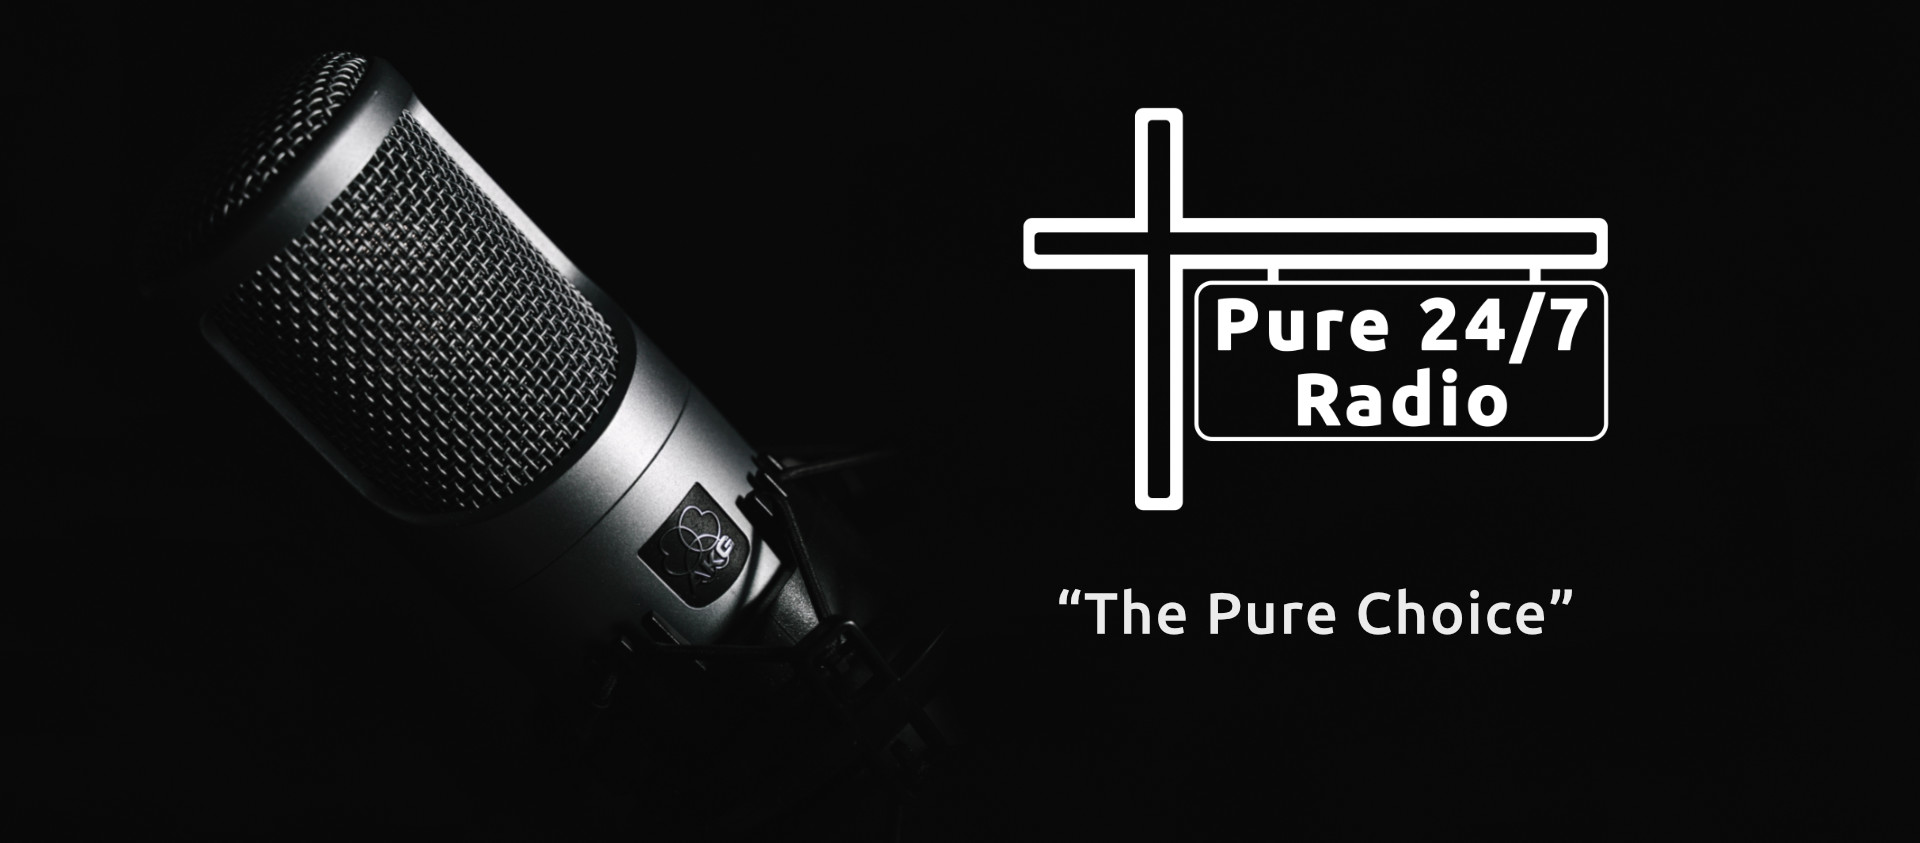 Pure 247 Radio - Facebook